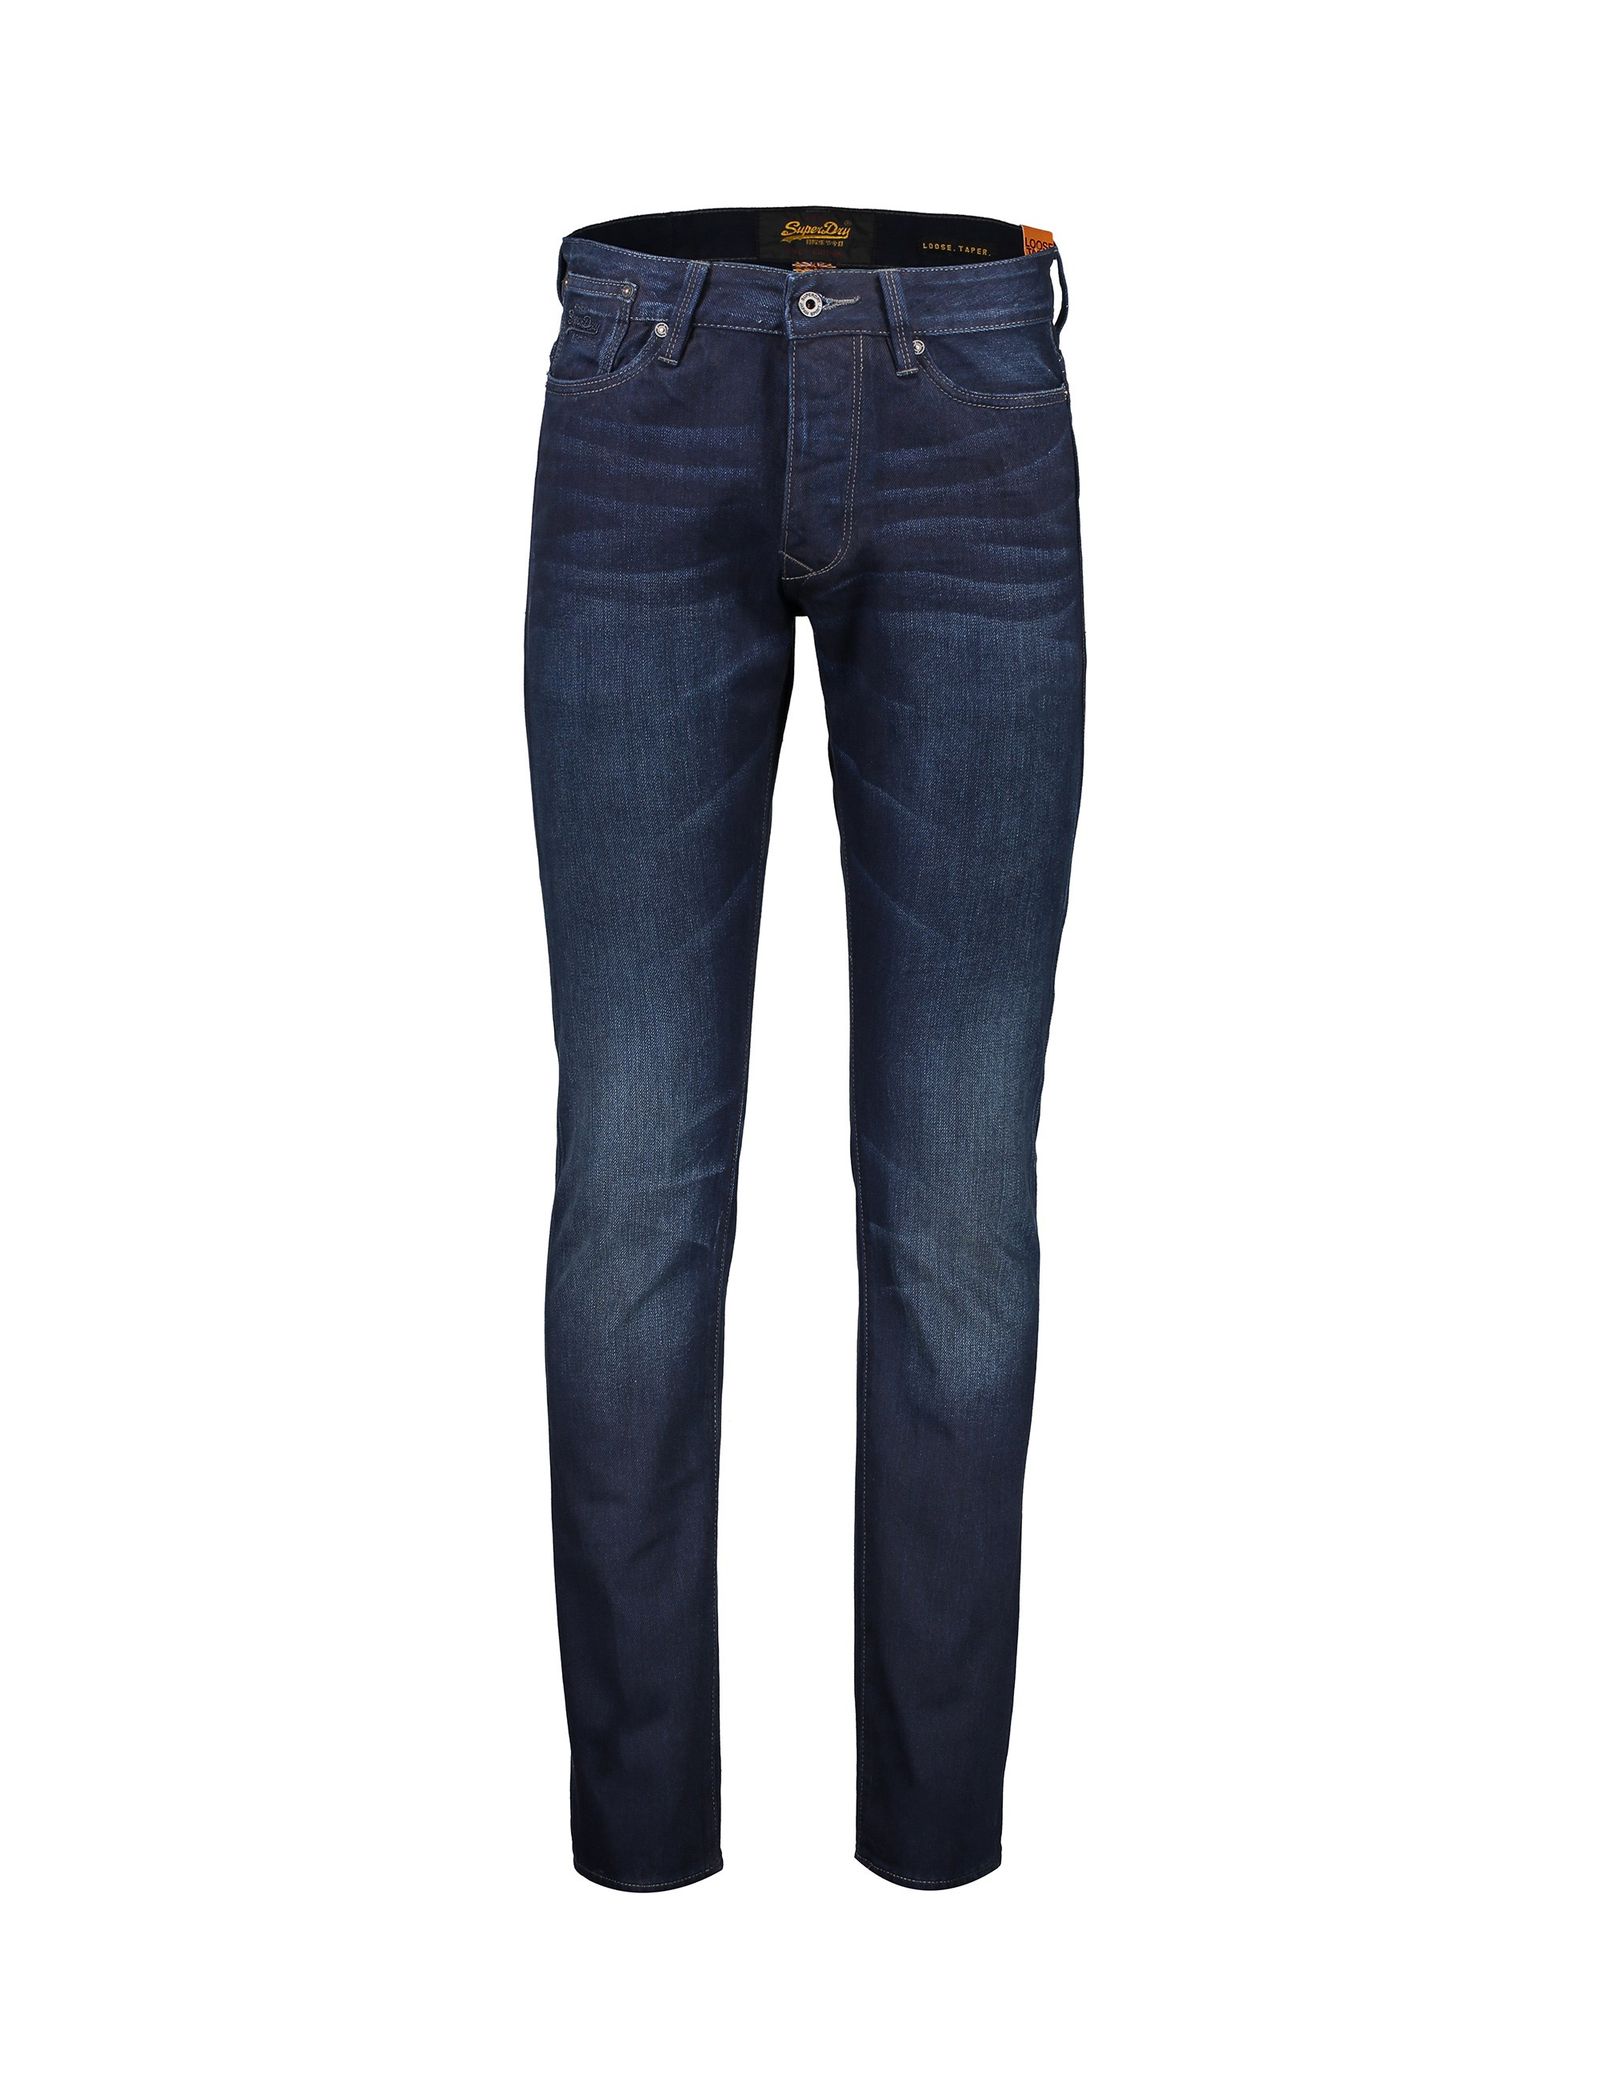 شلوار جین خمره ای مردانه Biker Tapered Jeans - سوپردرای - سرمه اي - 1